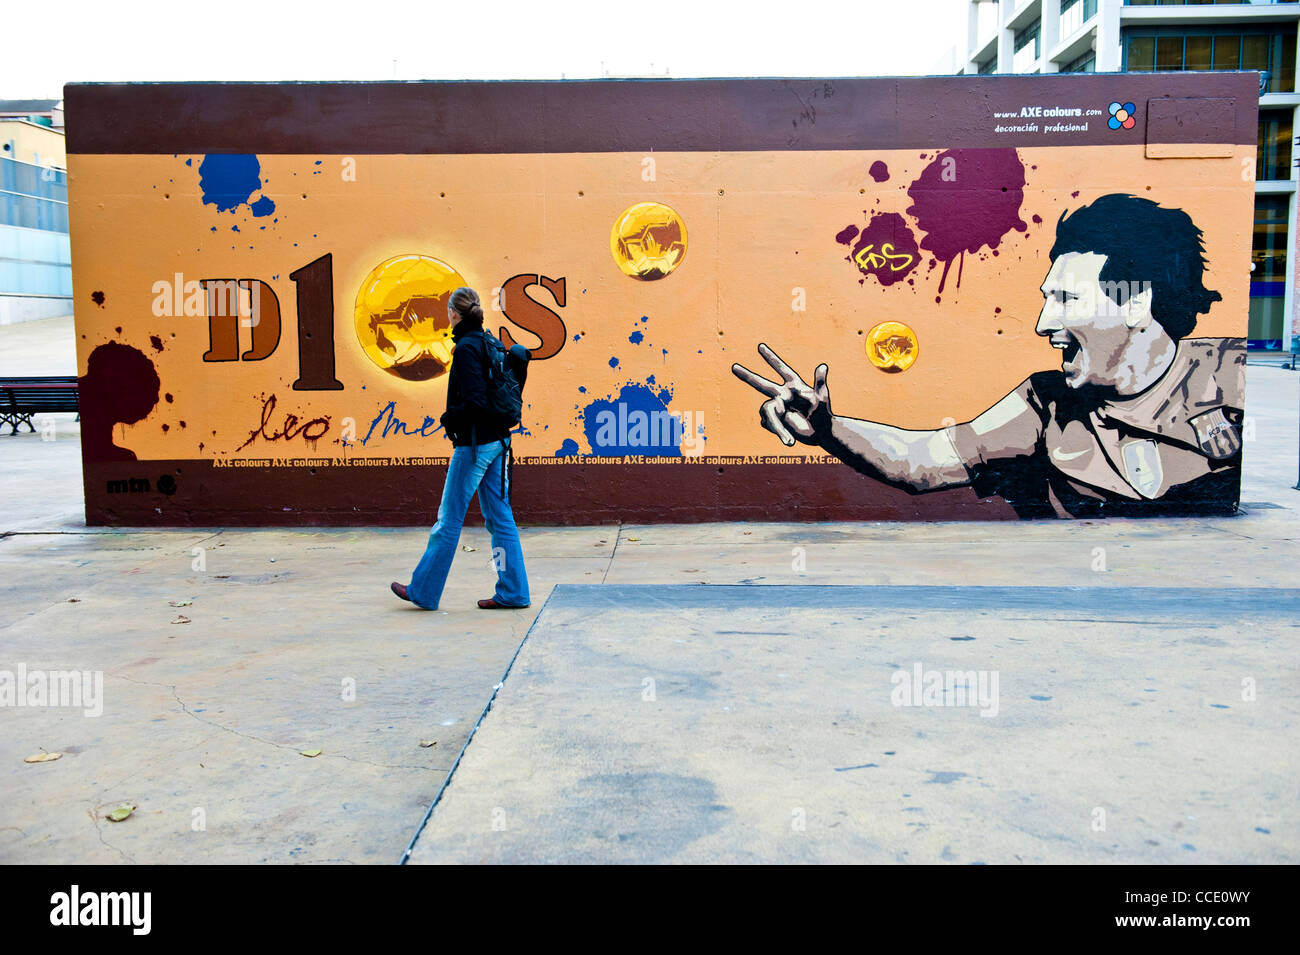 Lionel Messi graffiti tribute wall in Barcelona, Spain Stock Photo